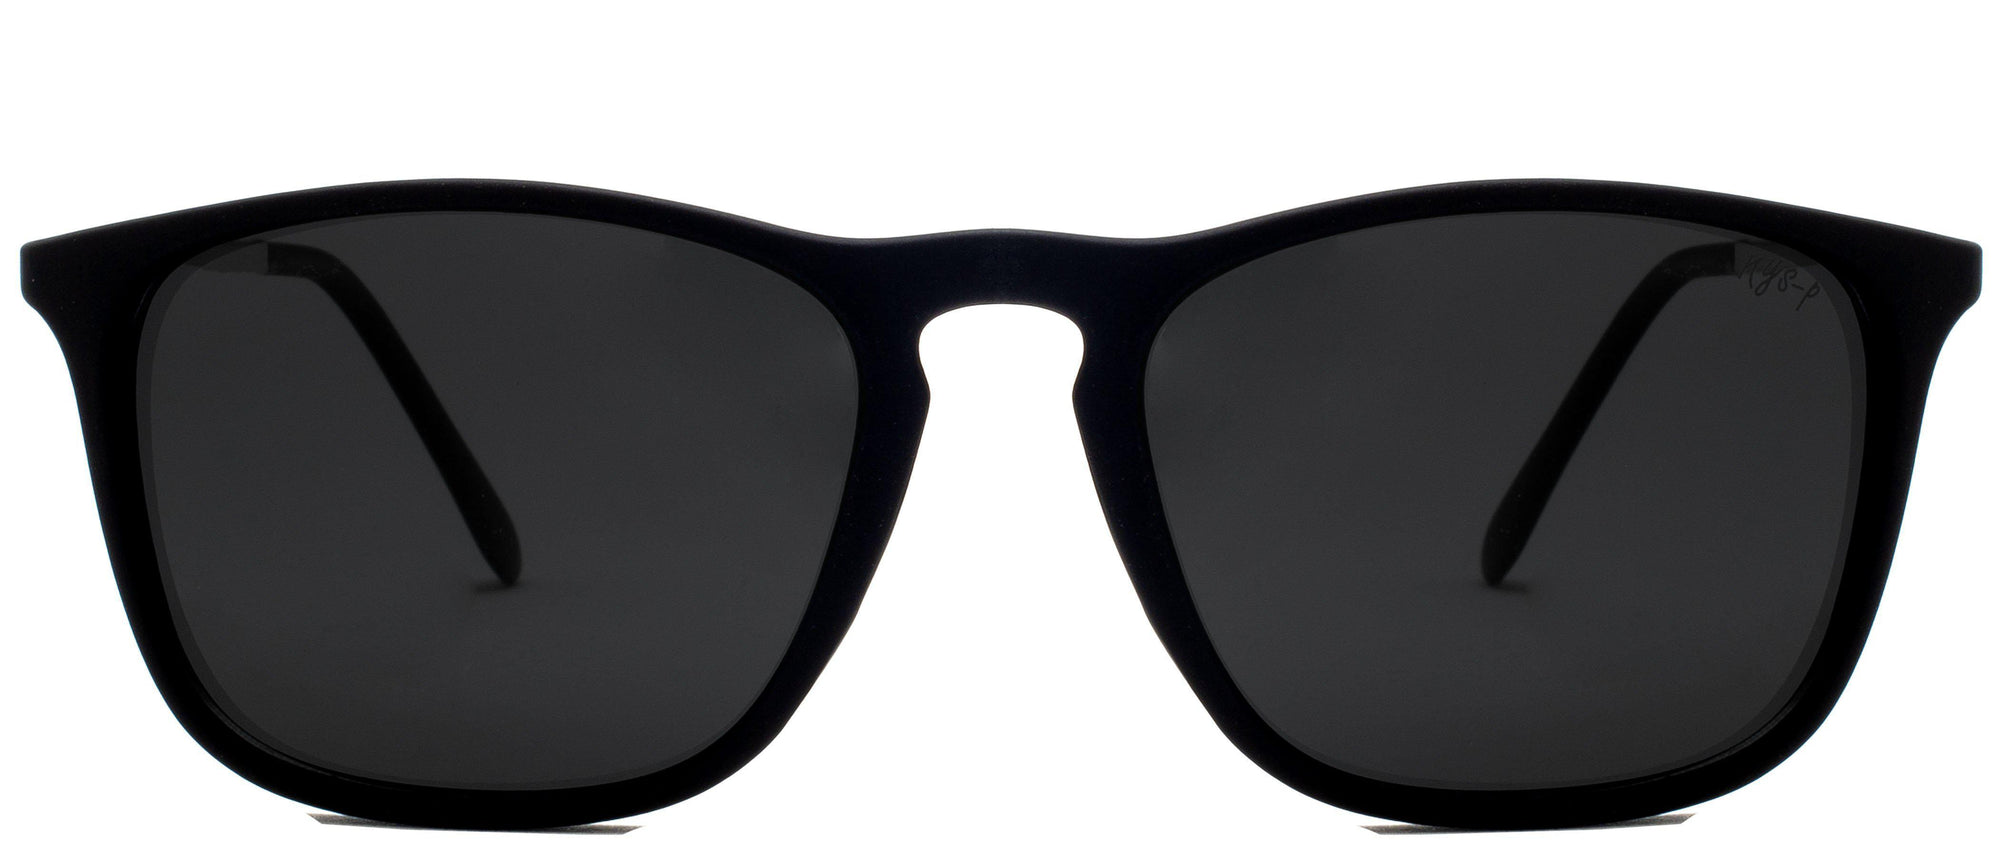 Lawrence Polarized - Sunglasses NYS Collection Eyewear Black/Black